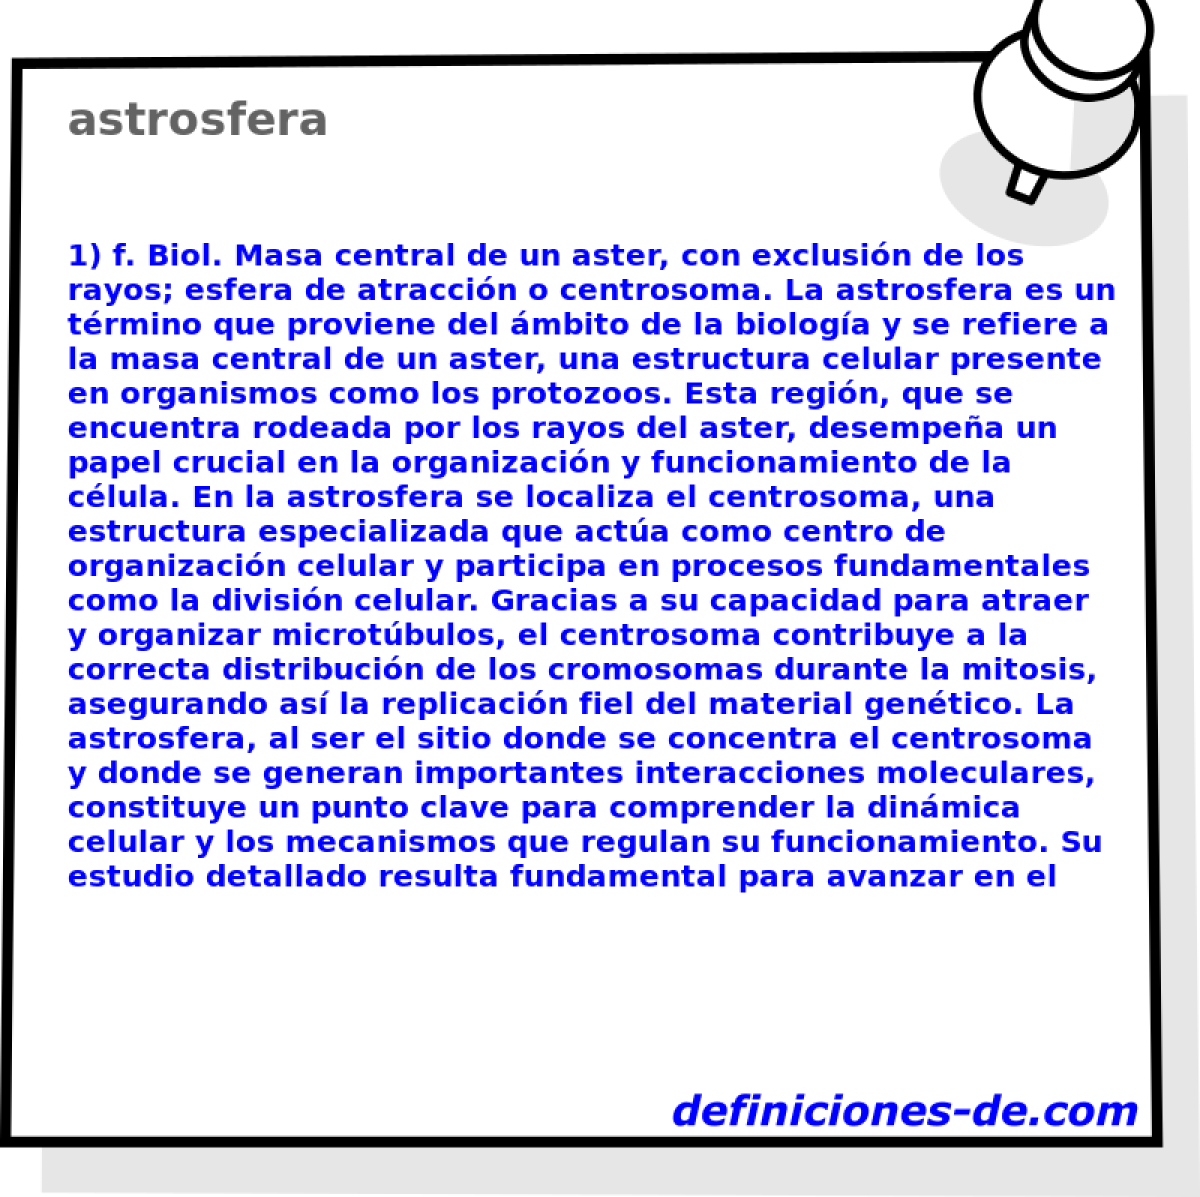 astrosfera 